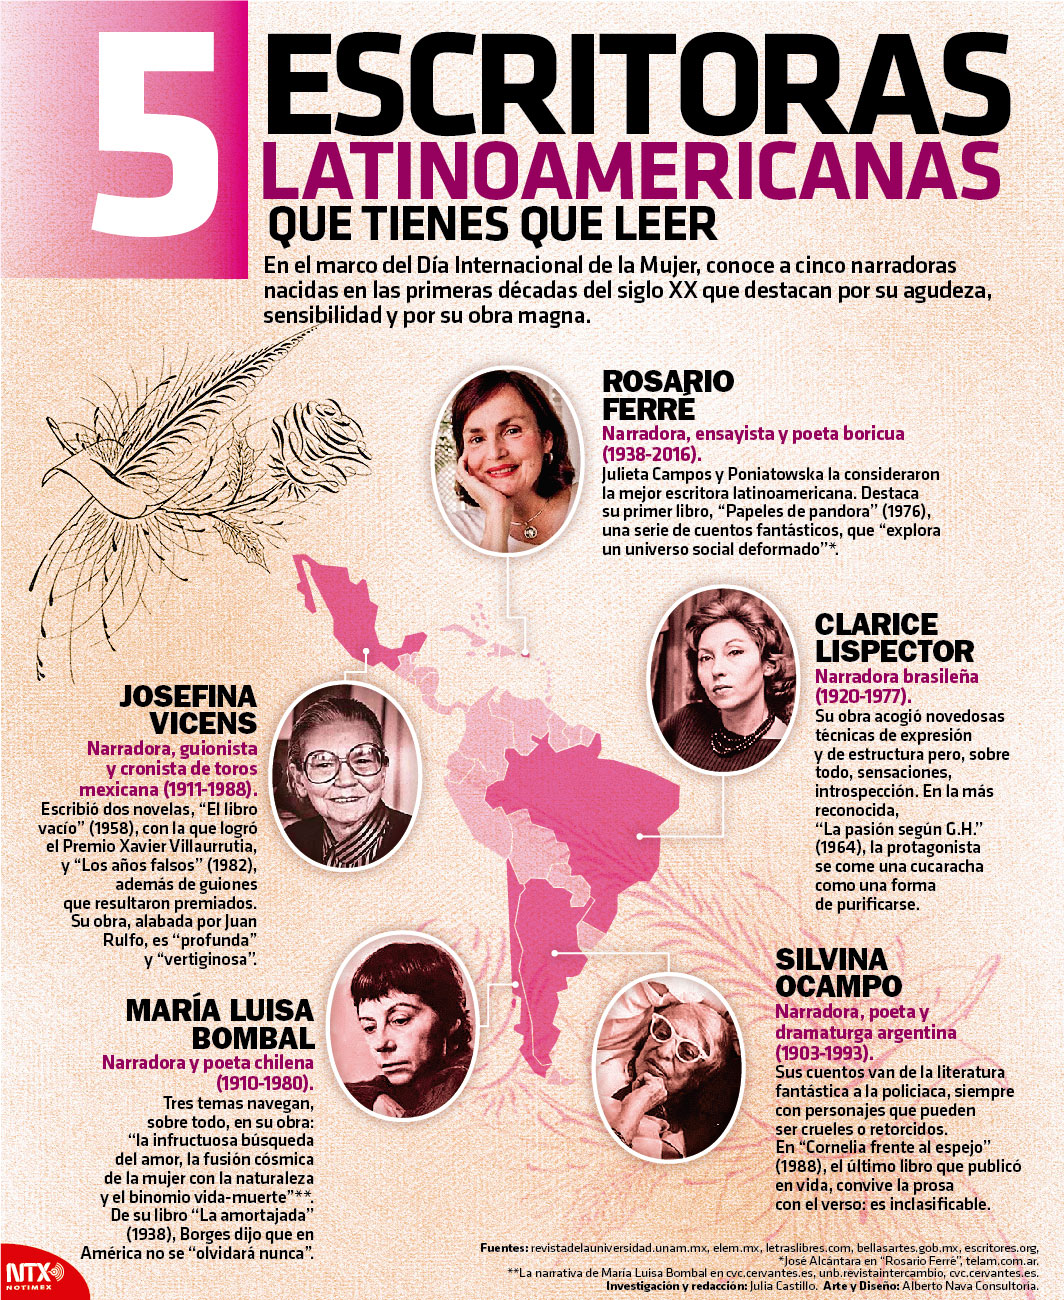 5 escritoras latinoamericanas que tienes que leer